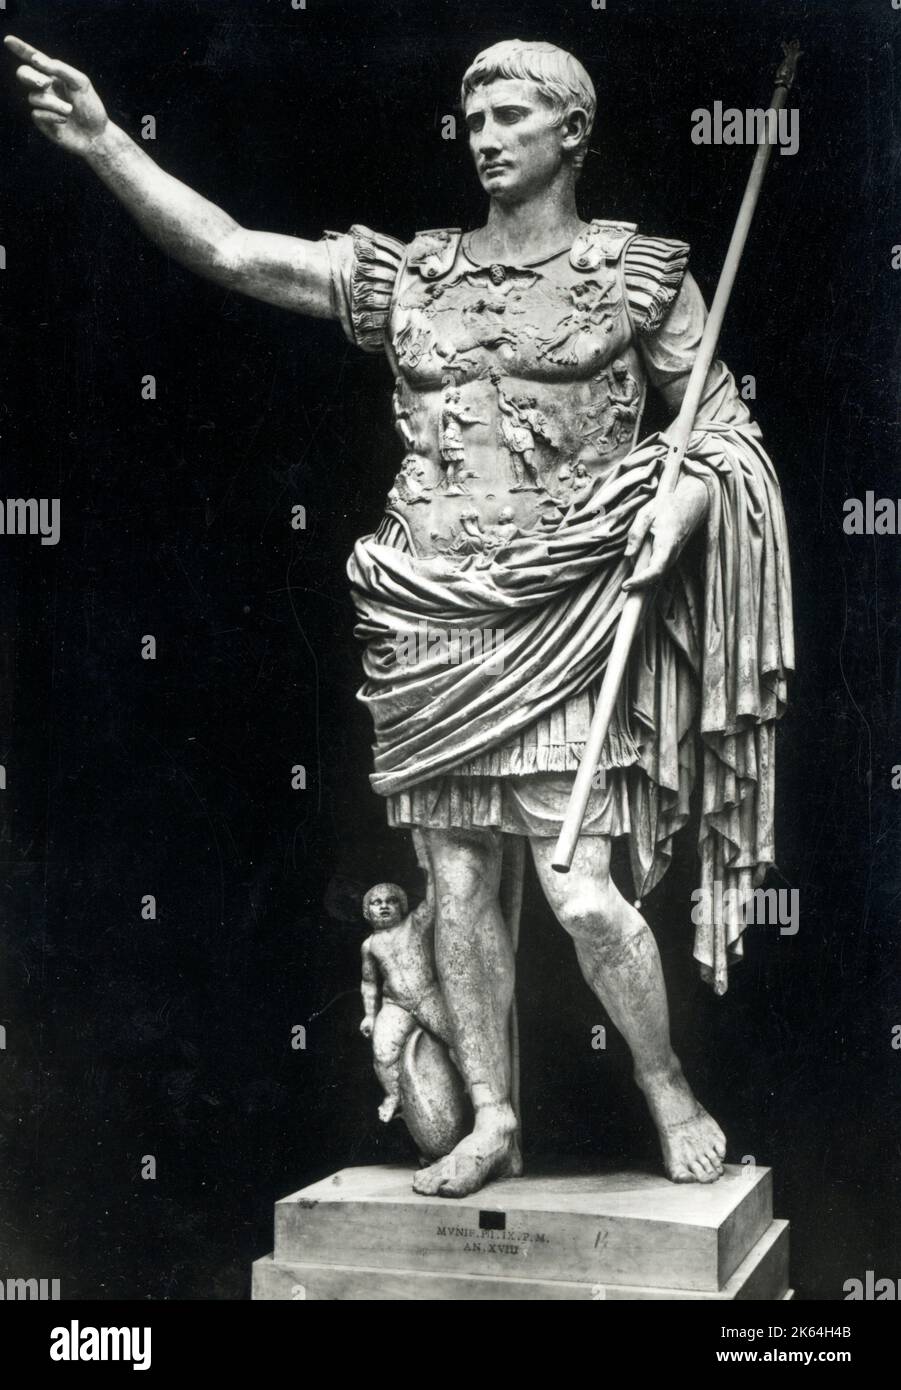 Statue von Caesar Augustus im Vatikanischen Museum, Vatikanstadt, Rom, Italien. Cäsar Augustus, auch bekannt als Oktavian, war der erste römische Kaiser, der von 27 v. Chr. bis zu seinem Tod im Jahre 14 n. Chr. regierte Stockfoto